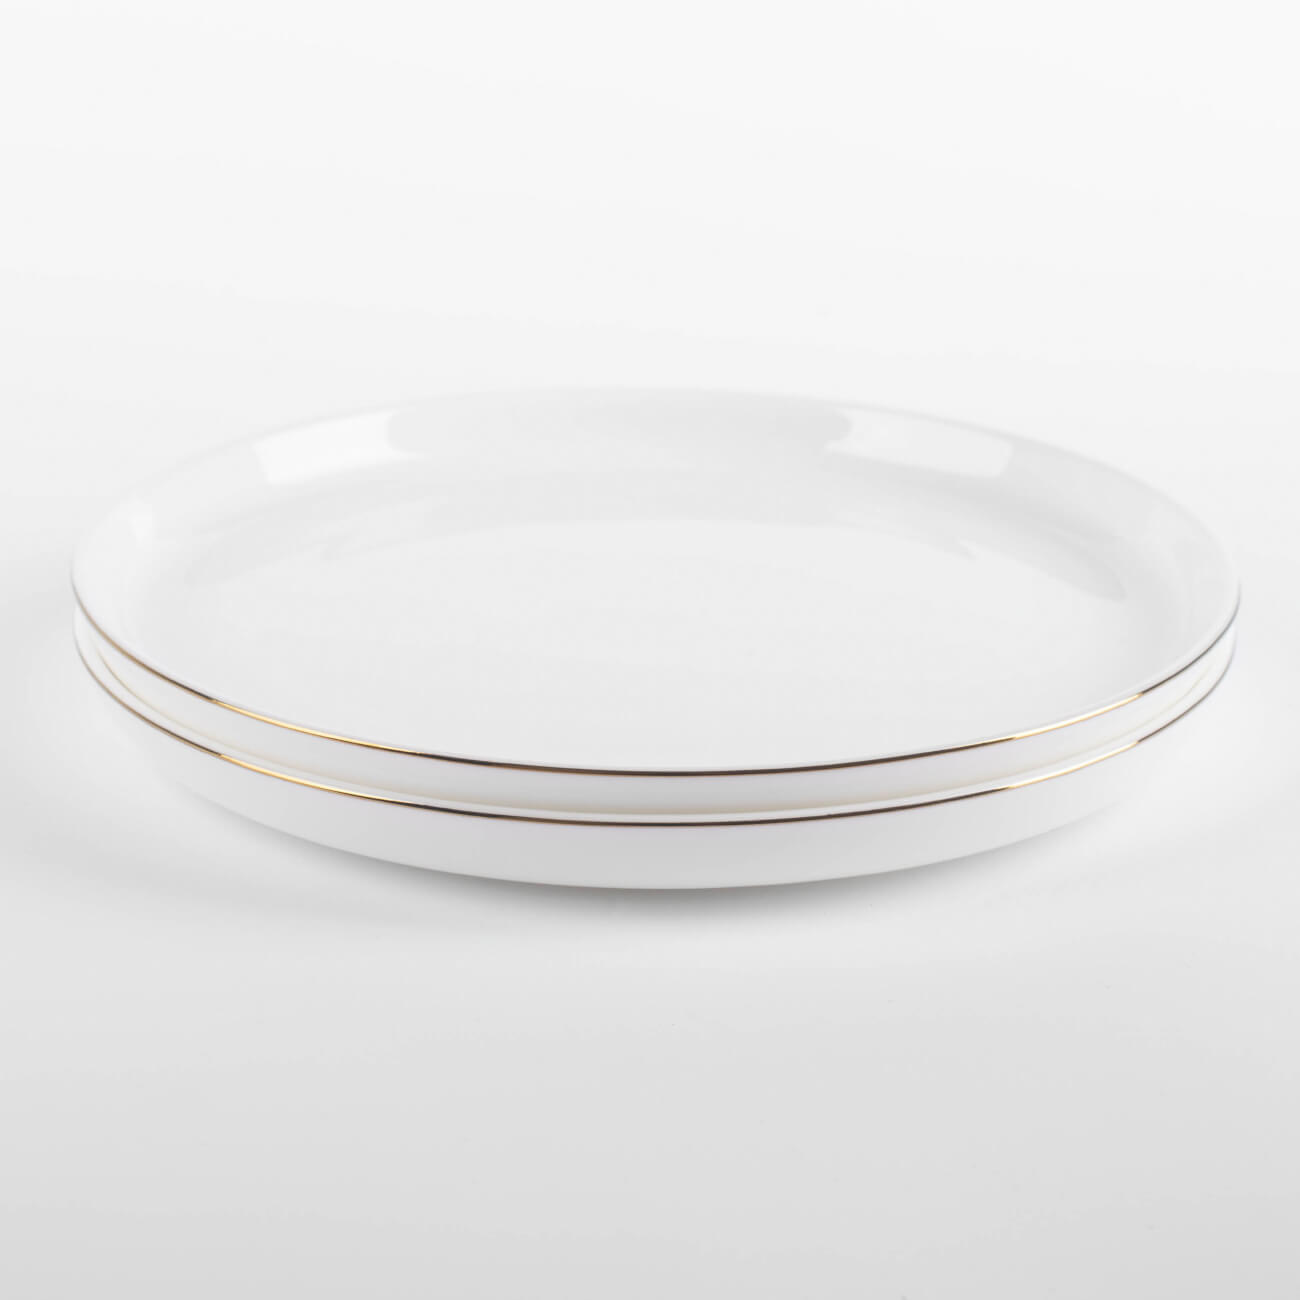 Dessert plate, 20 cm, 2 pieces, porcelain F, white, Ideal gold изображение № 1